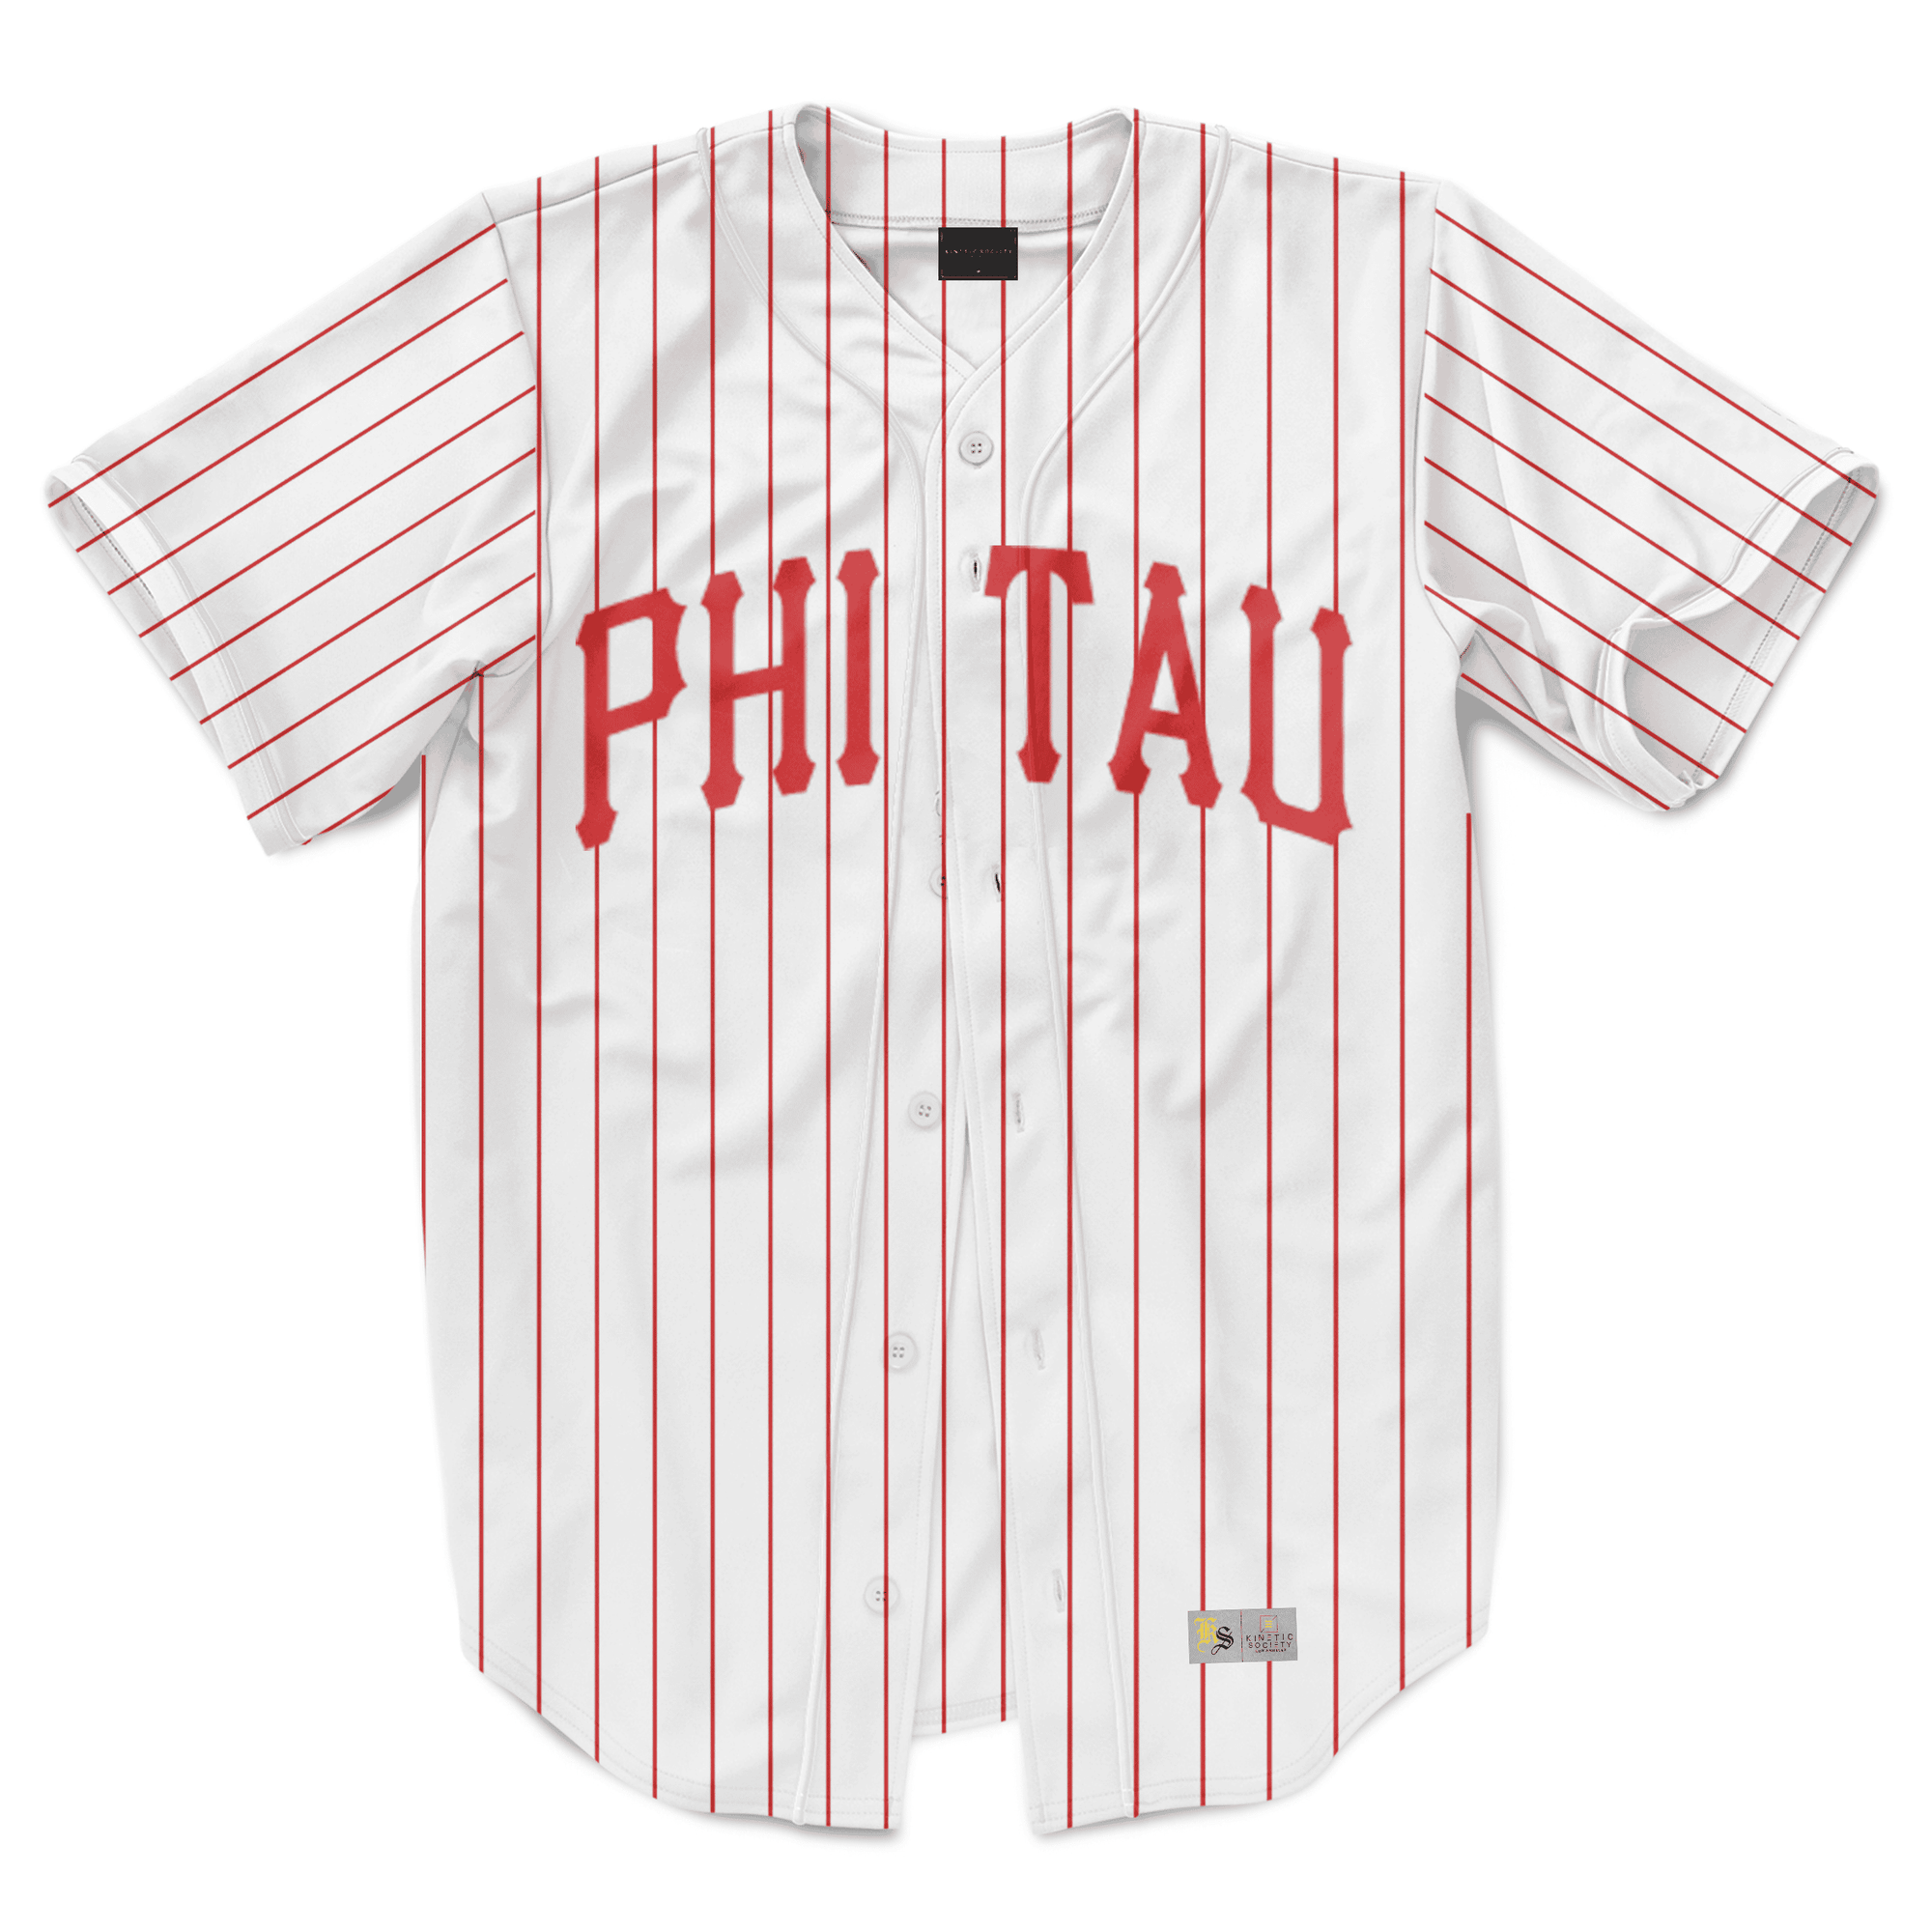 Phi Kappa Tau - Red Pinstripe Baseball Jersey